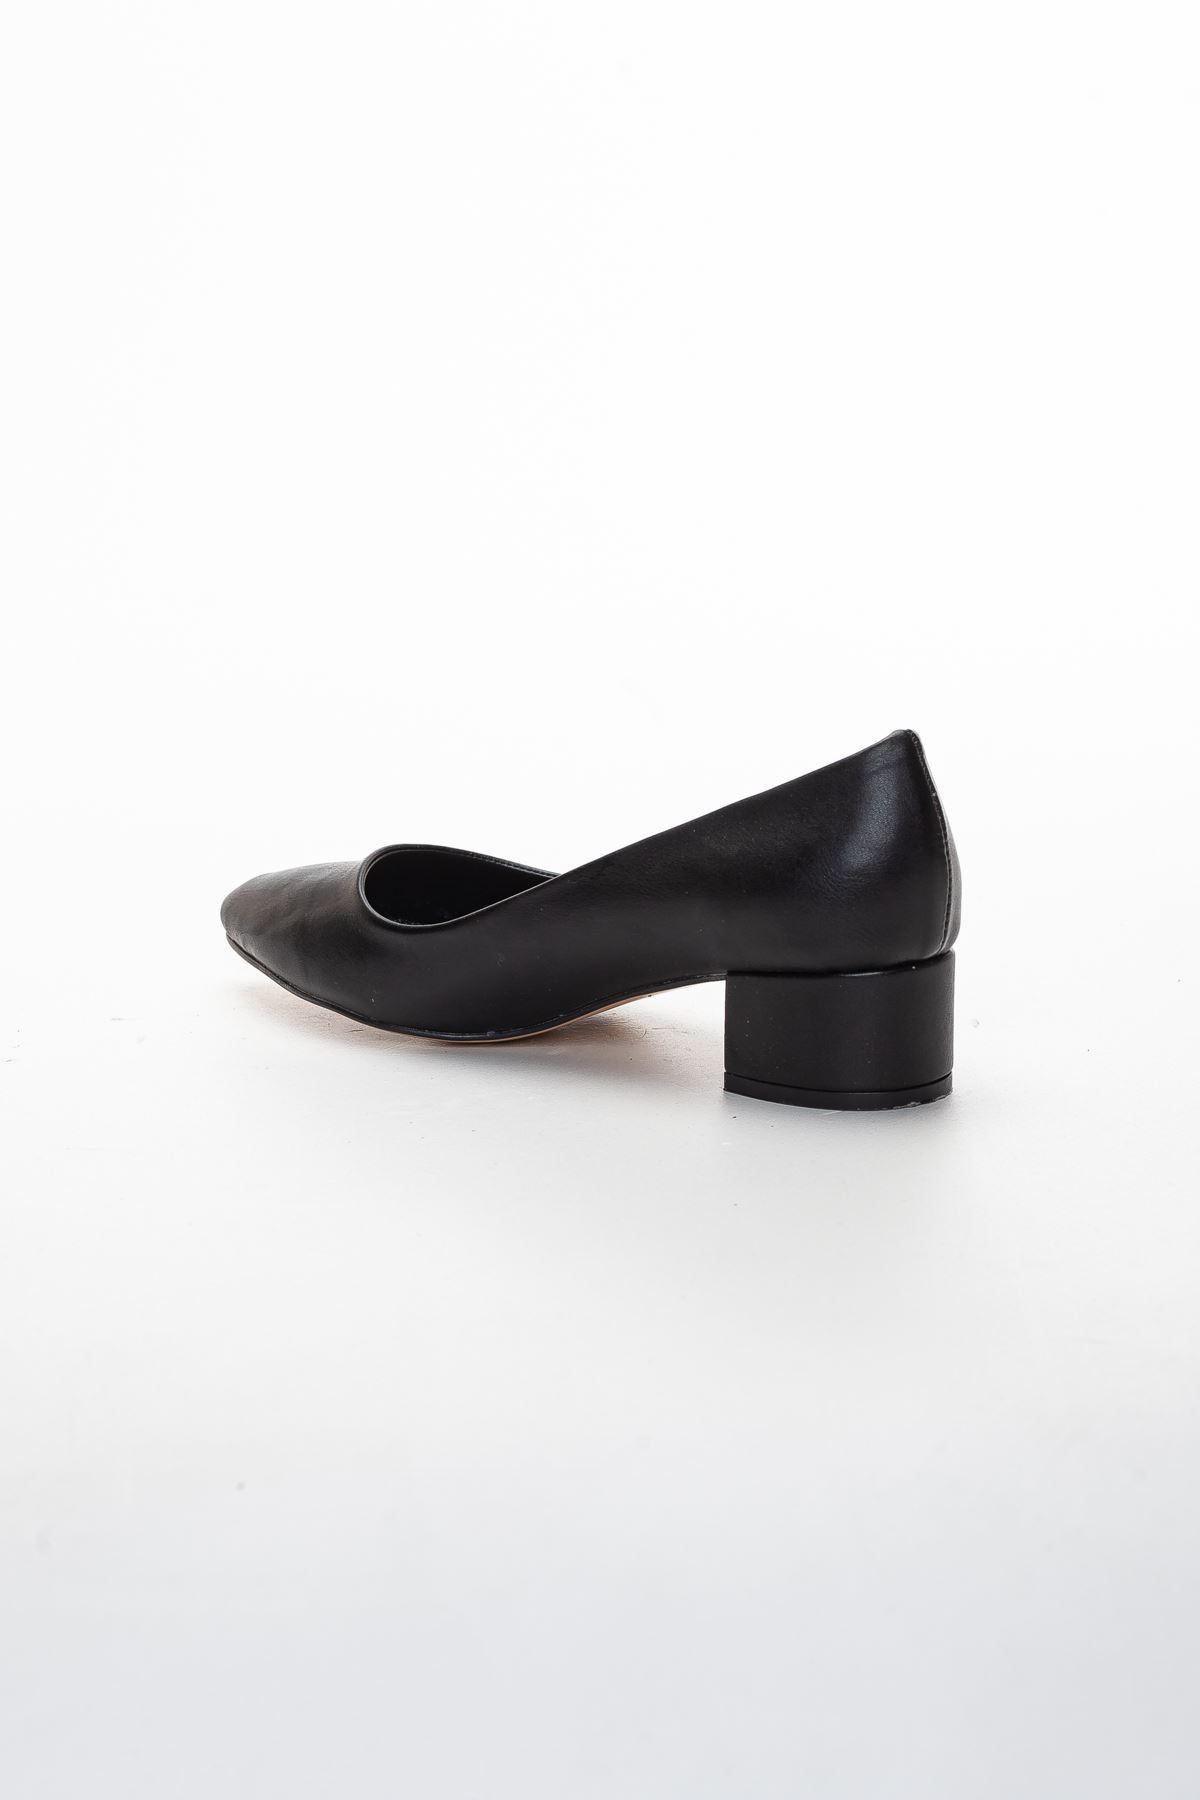 London Kadın Kısa Topuklu Ayakkabı SİYAH CİLT